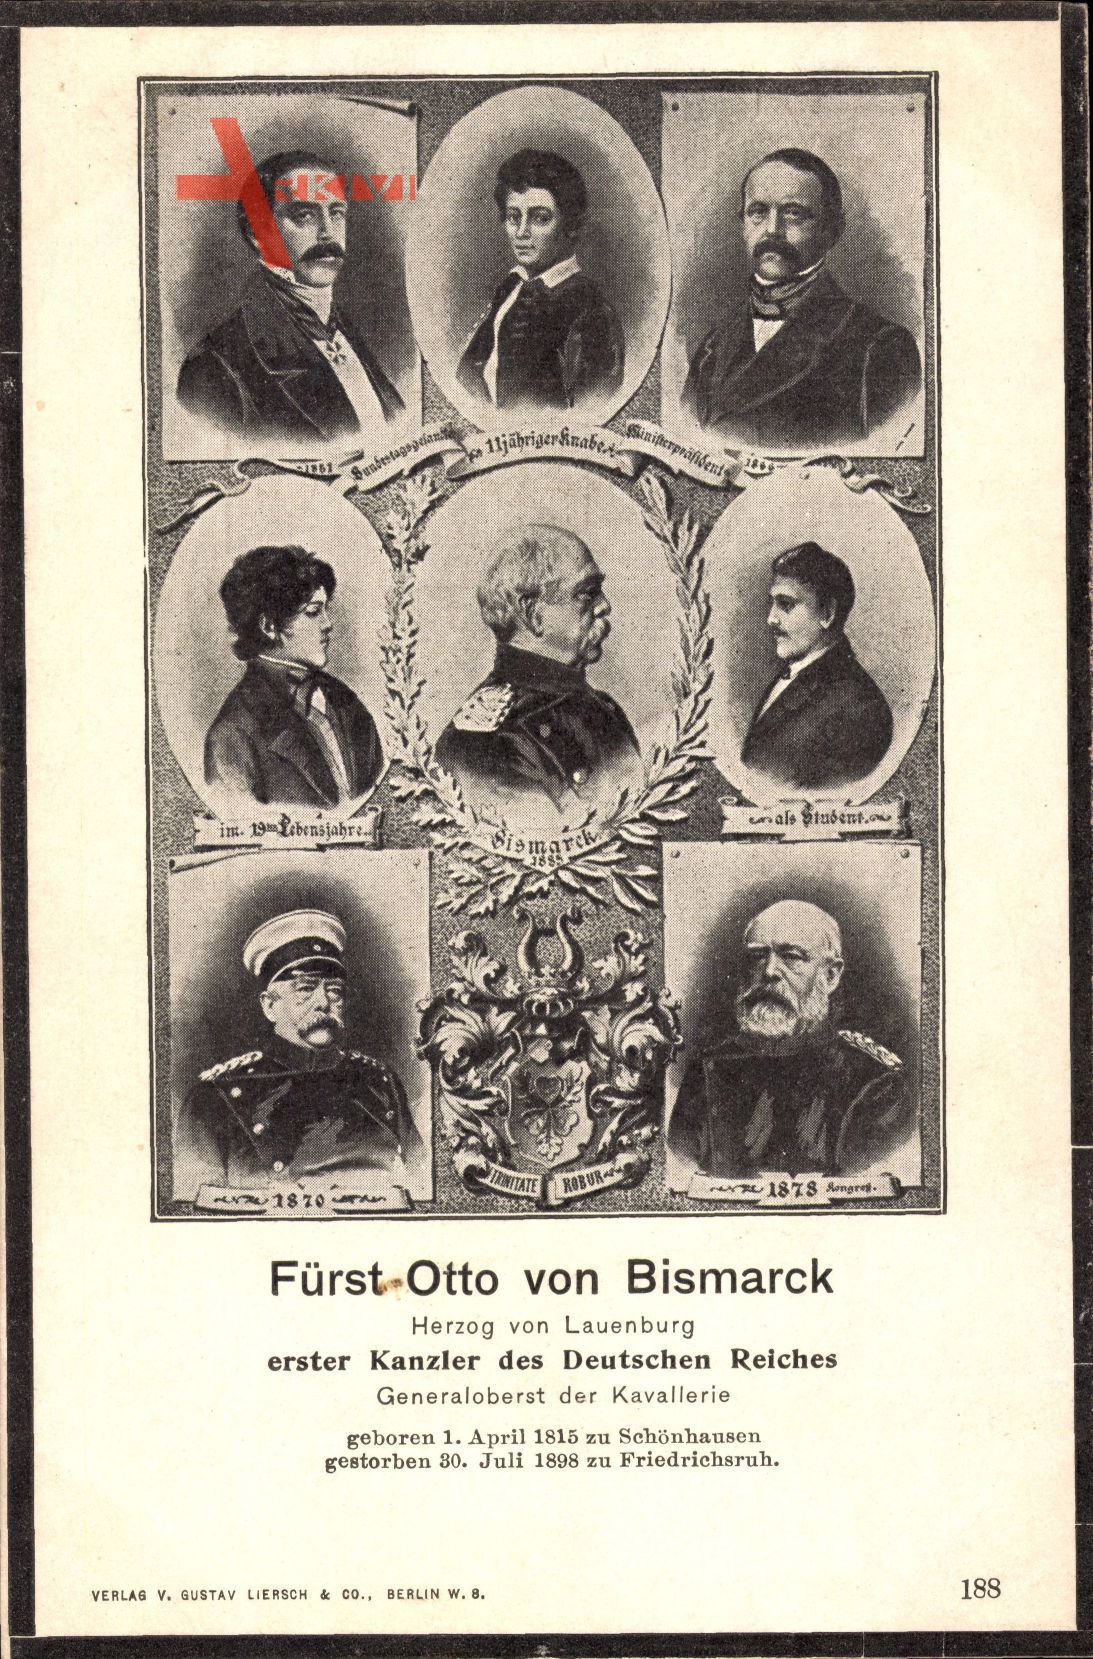 Fürst Otto von Bismarck, Erster Kanzler des Deutschen Reiches